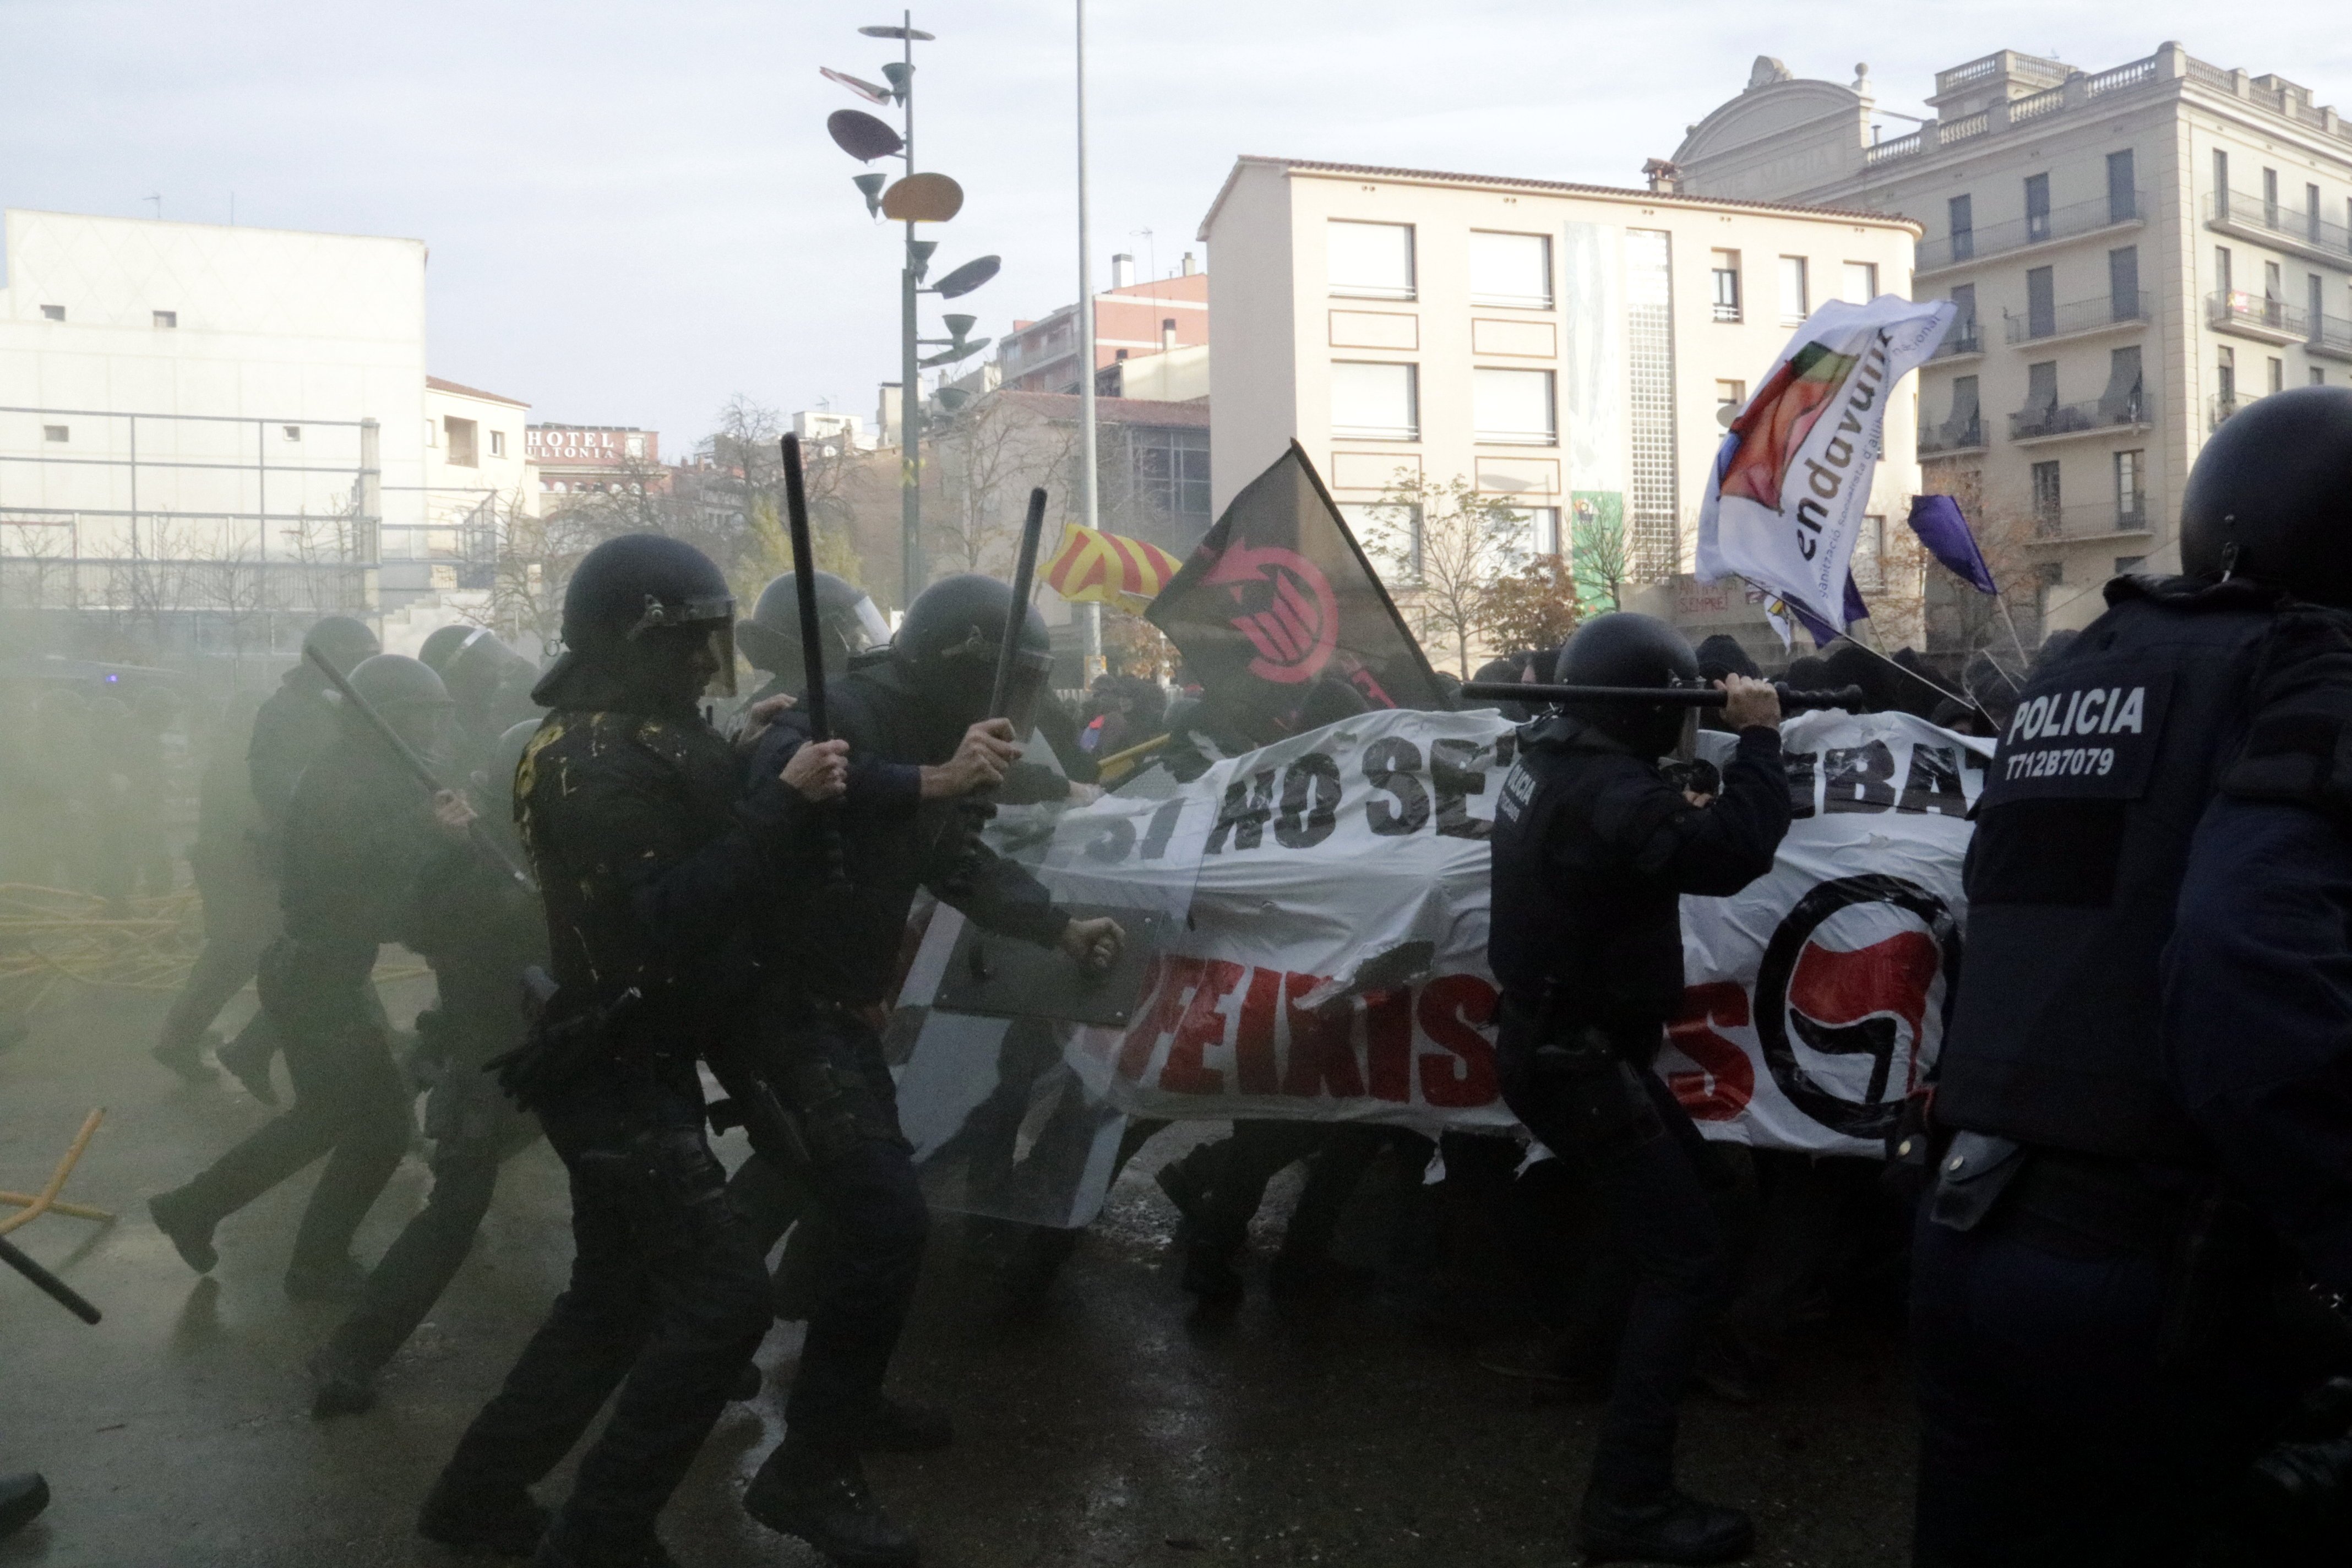 Absuelto el activista antifascista acusado de lanzar una silla a un mosso el 6-D en Girona